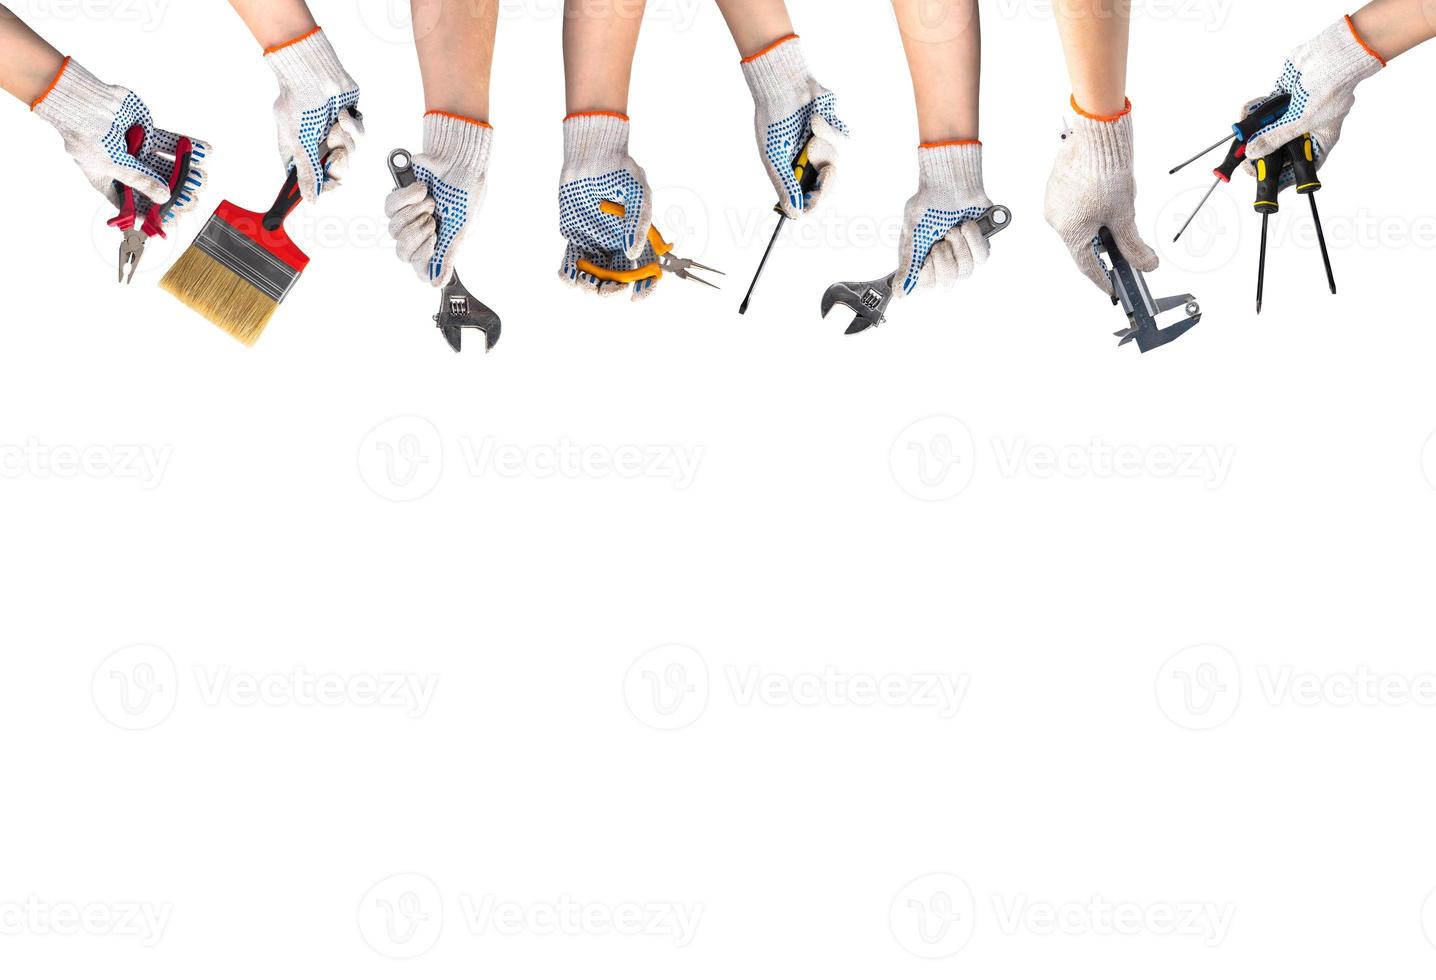 concept de bonne fête du travail. les mains dans les gants de travail tiennent des outils pour la réparation et la construction. clé, tournevis, pinceau, pinces sur fond blanc. photo